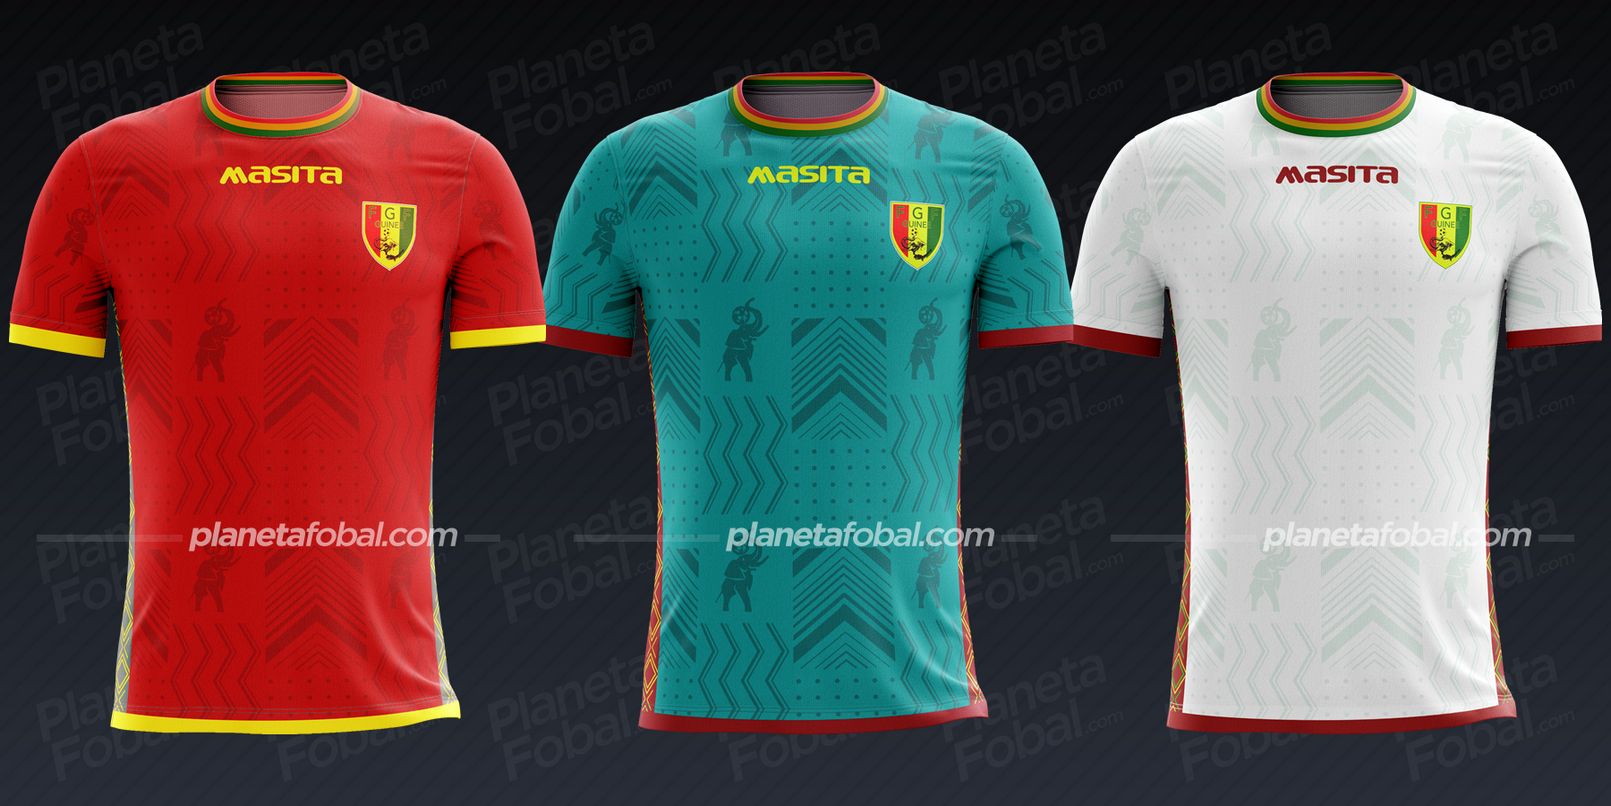 Guinea (Masita) | Camisetas Copa África 2022